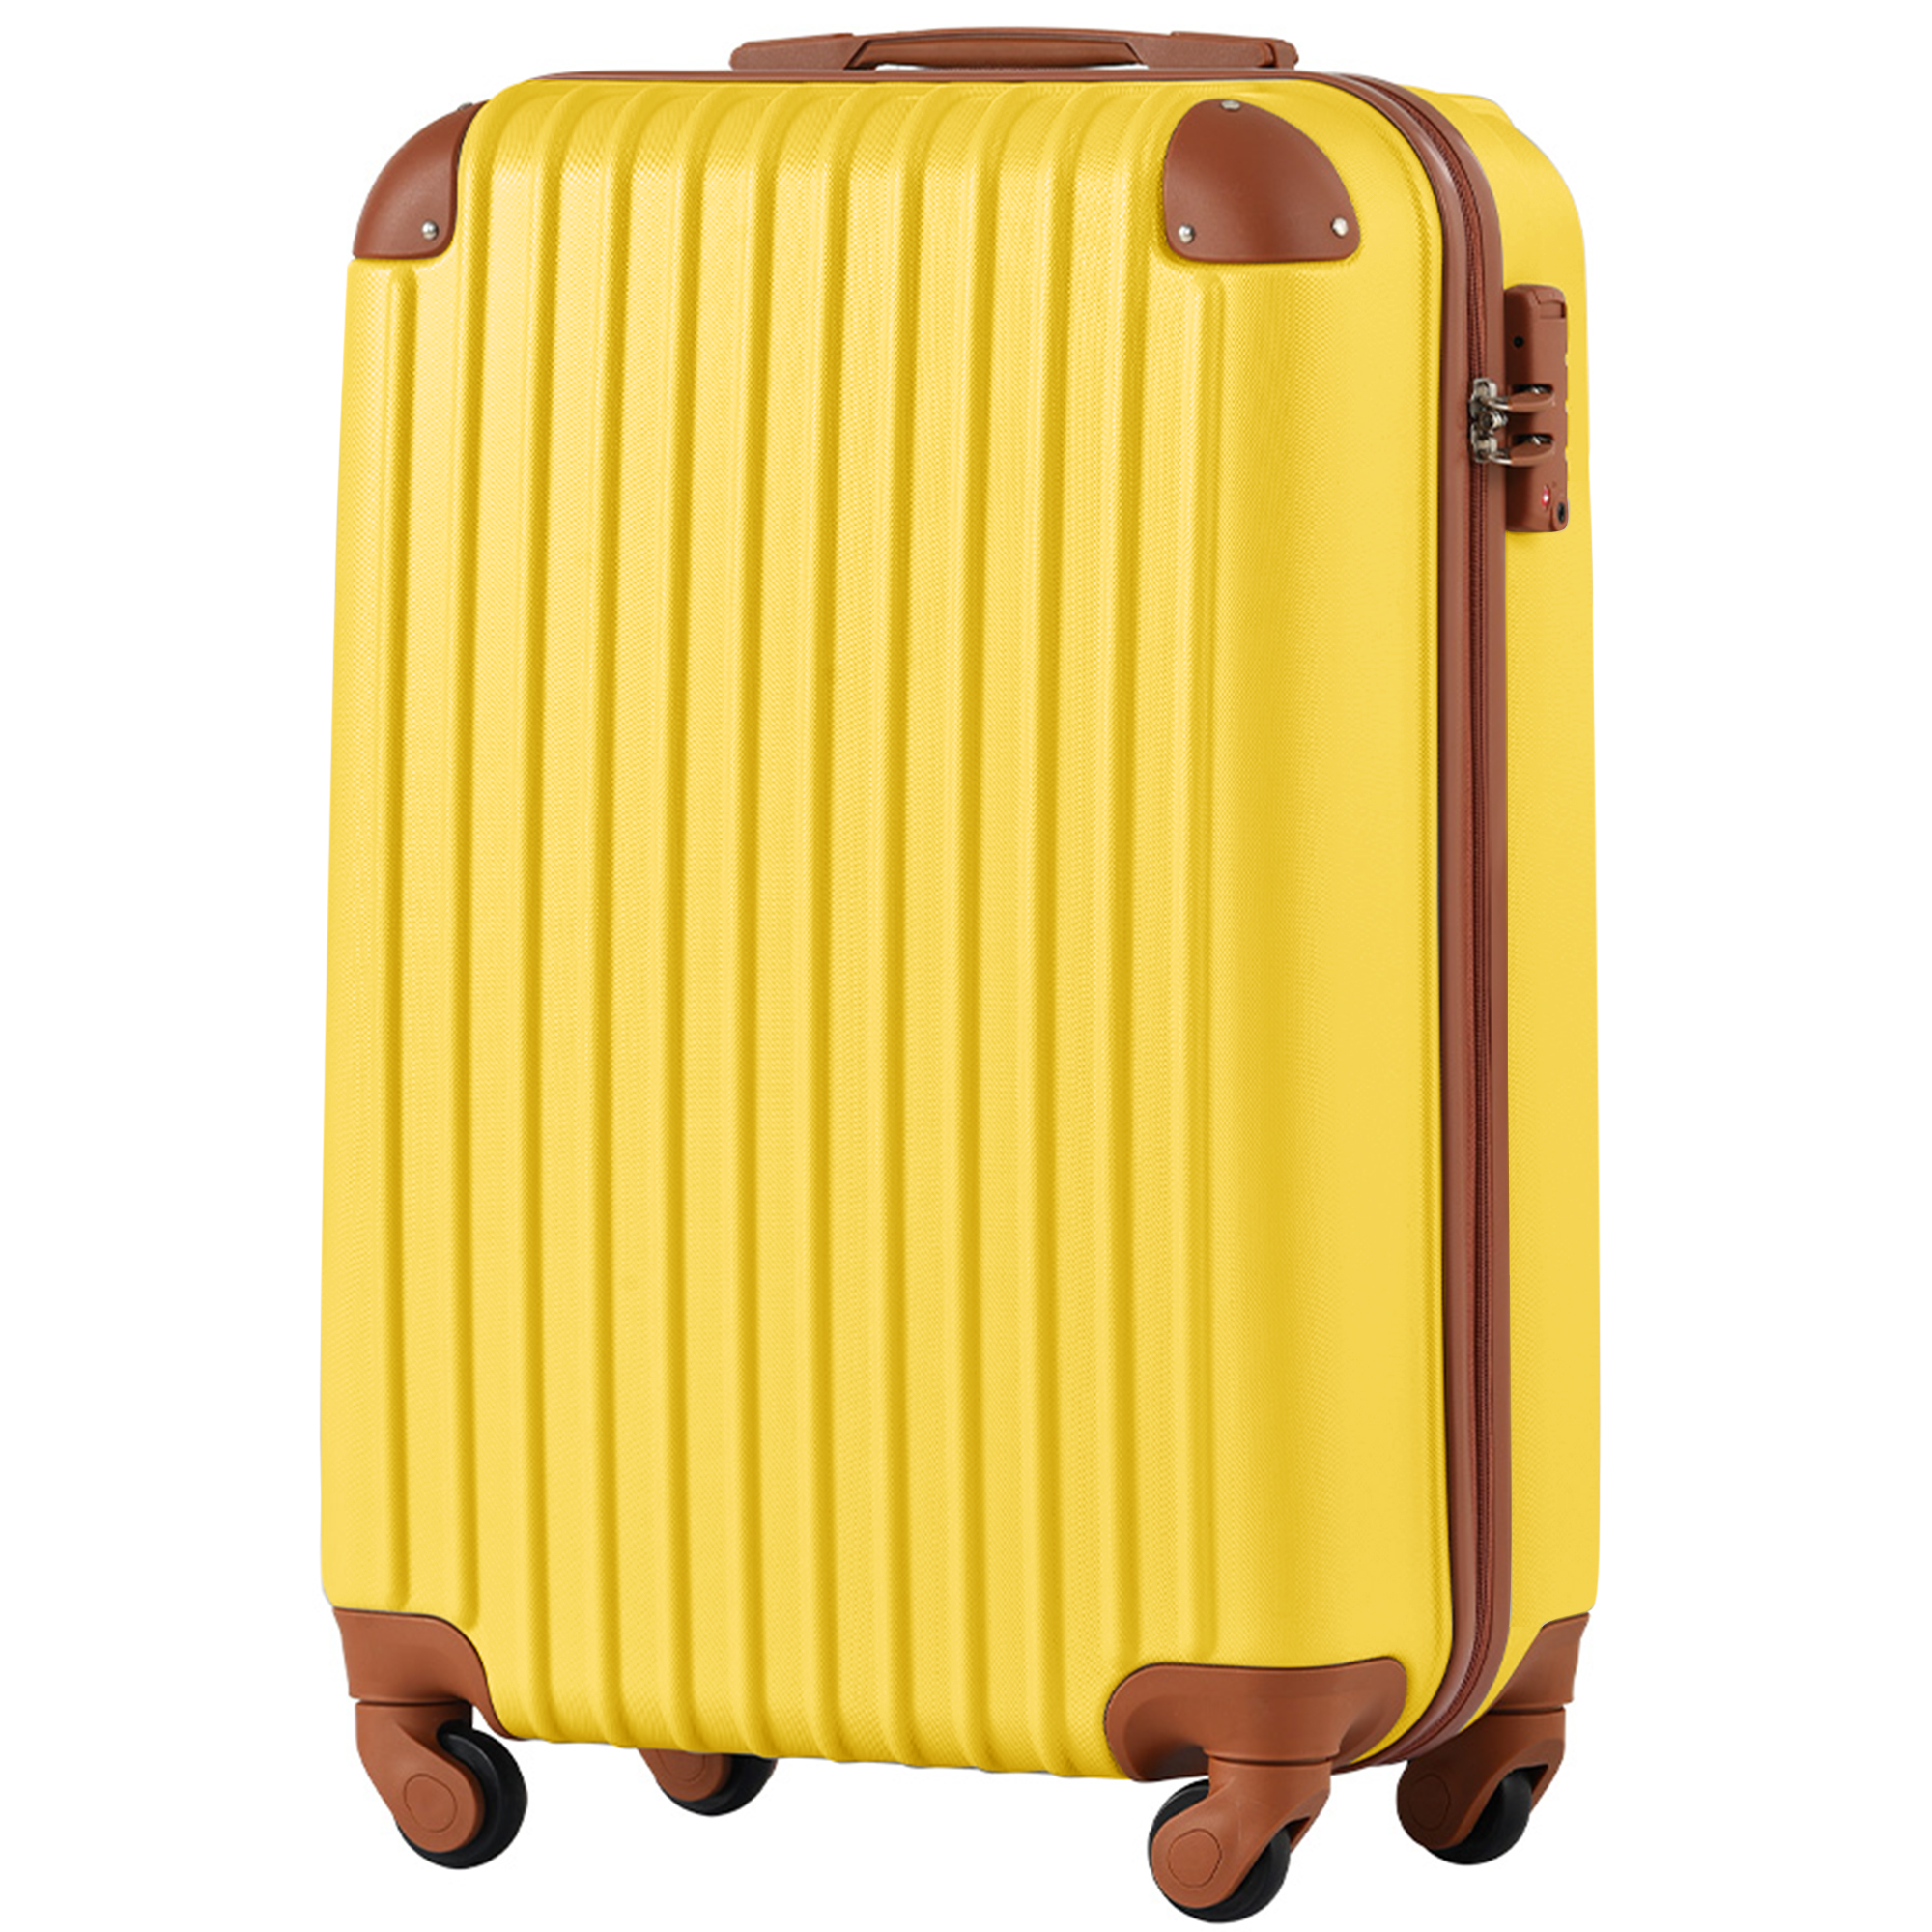 スーツケース セーキャリーケース 機内持ち込み SSサイズ スーツケース 